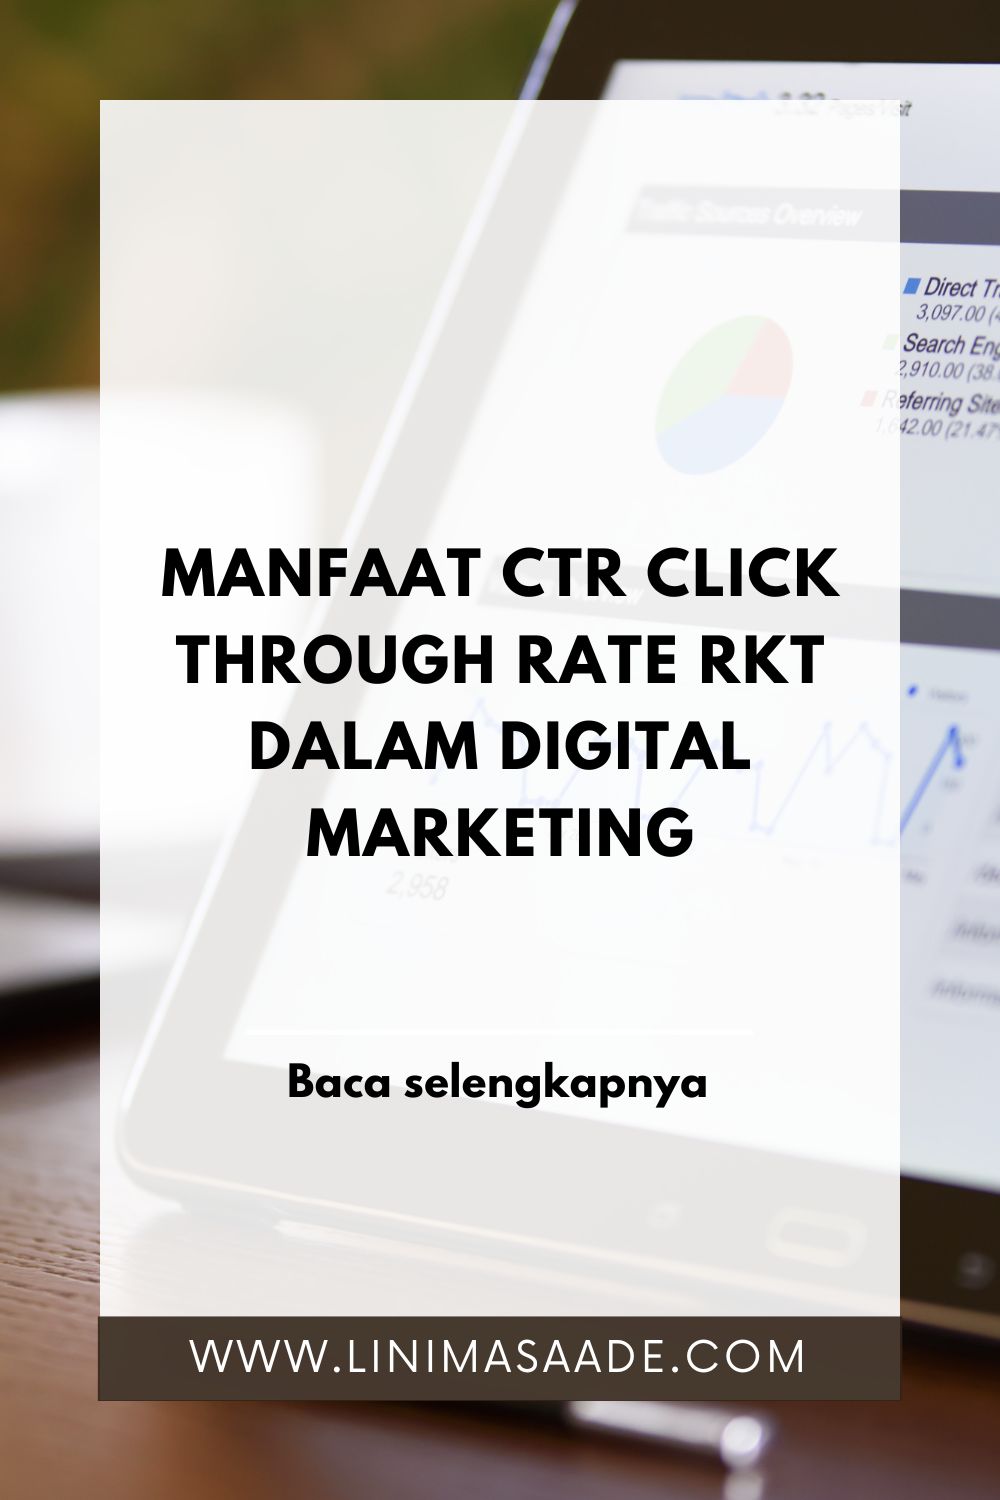 Manfaat CTR Click Through Rate RKT dalam Digital Marketing